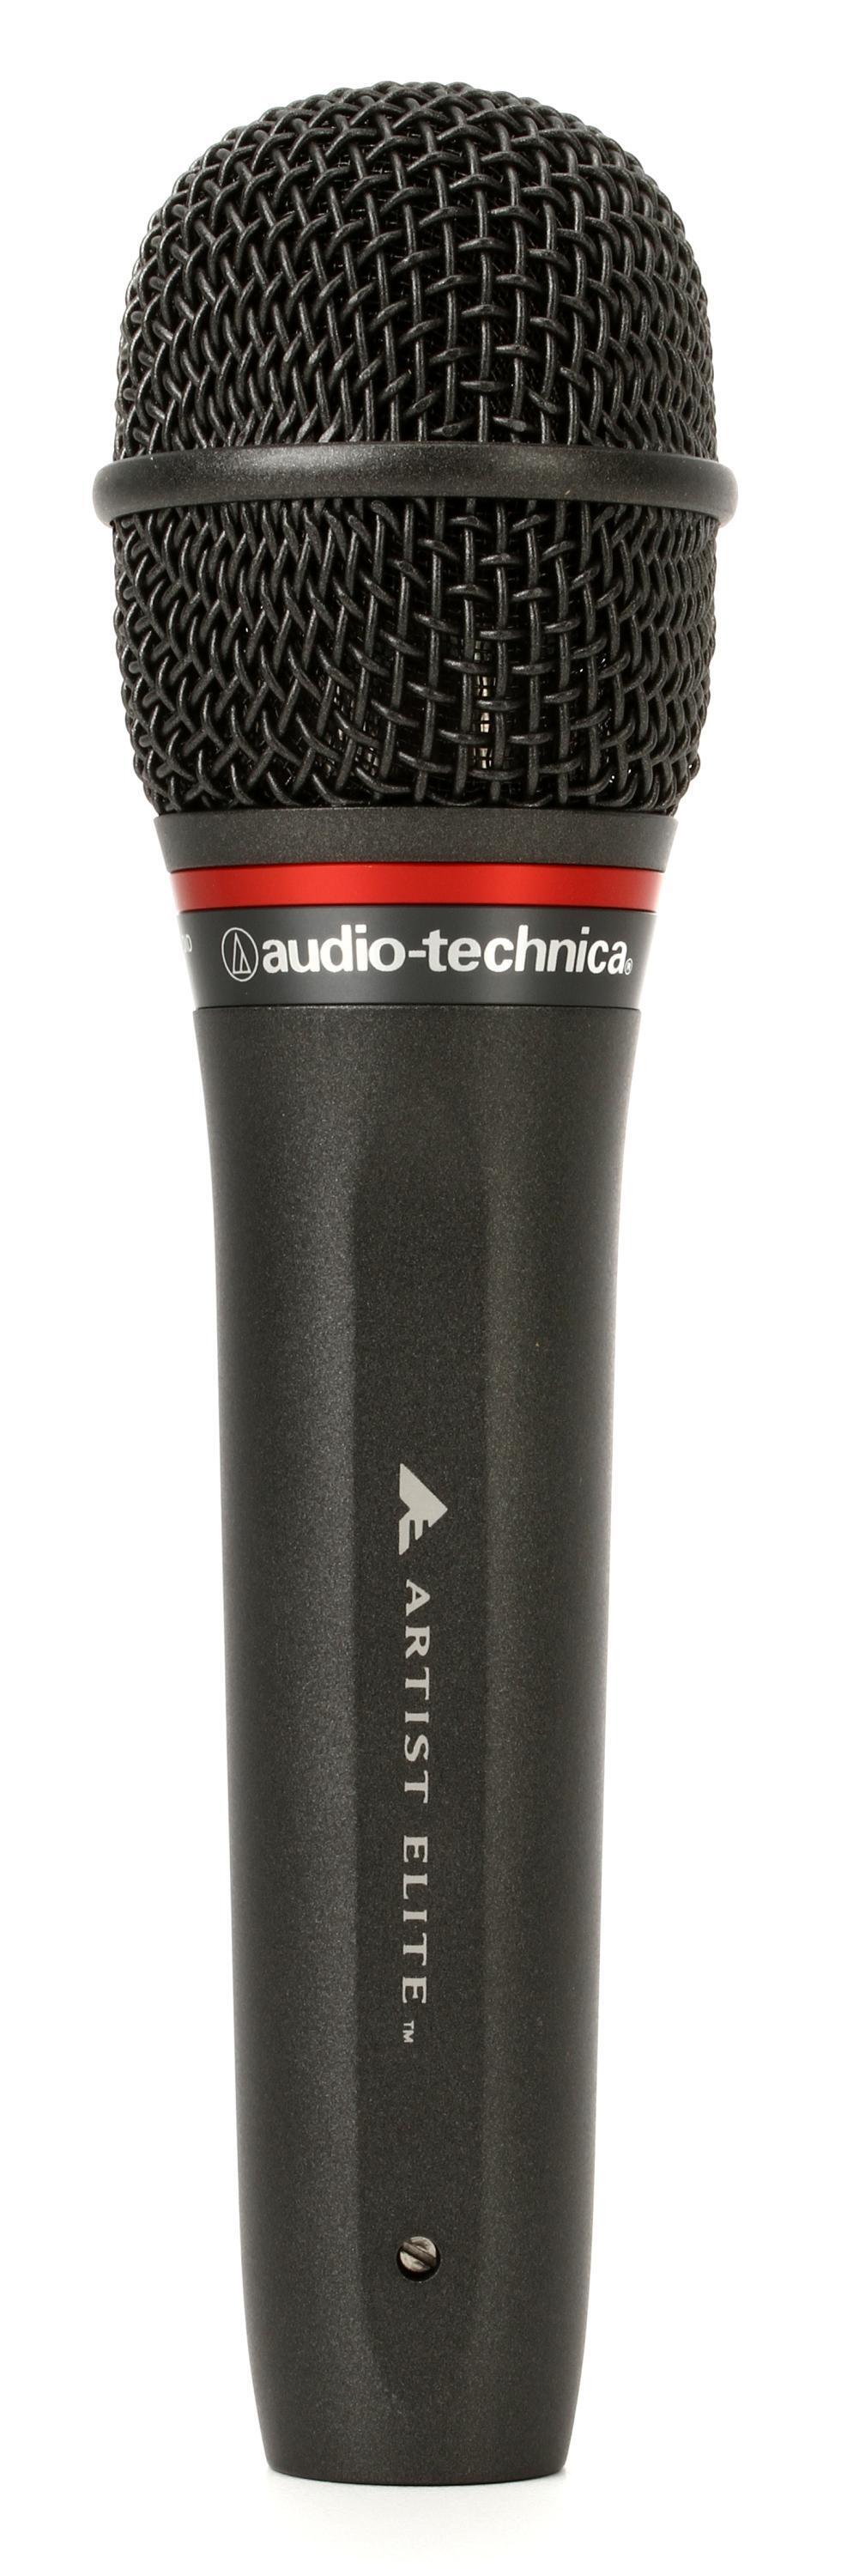 熱い販売 audio-technica ダイナミックマイク AE6100 配信機器・PA機器 